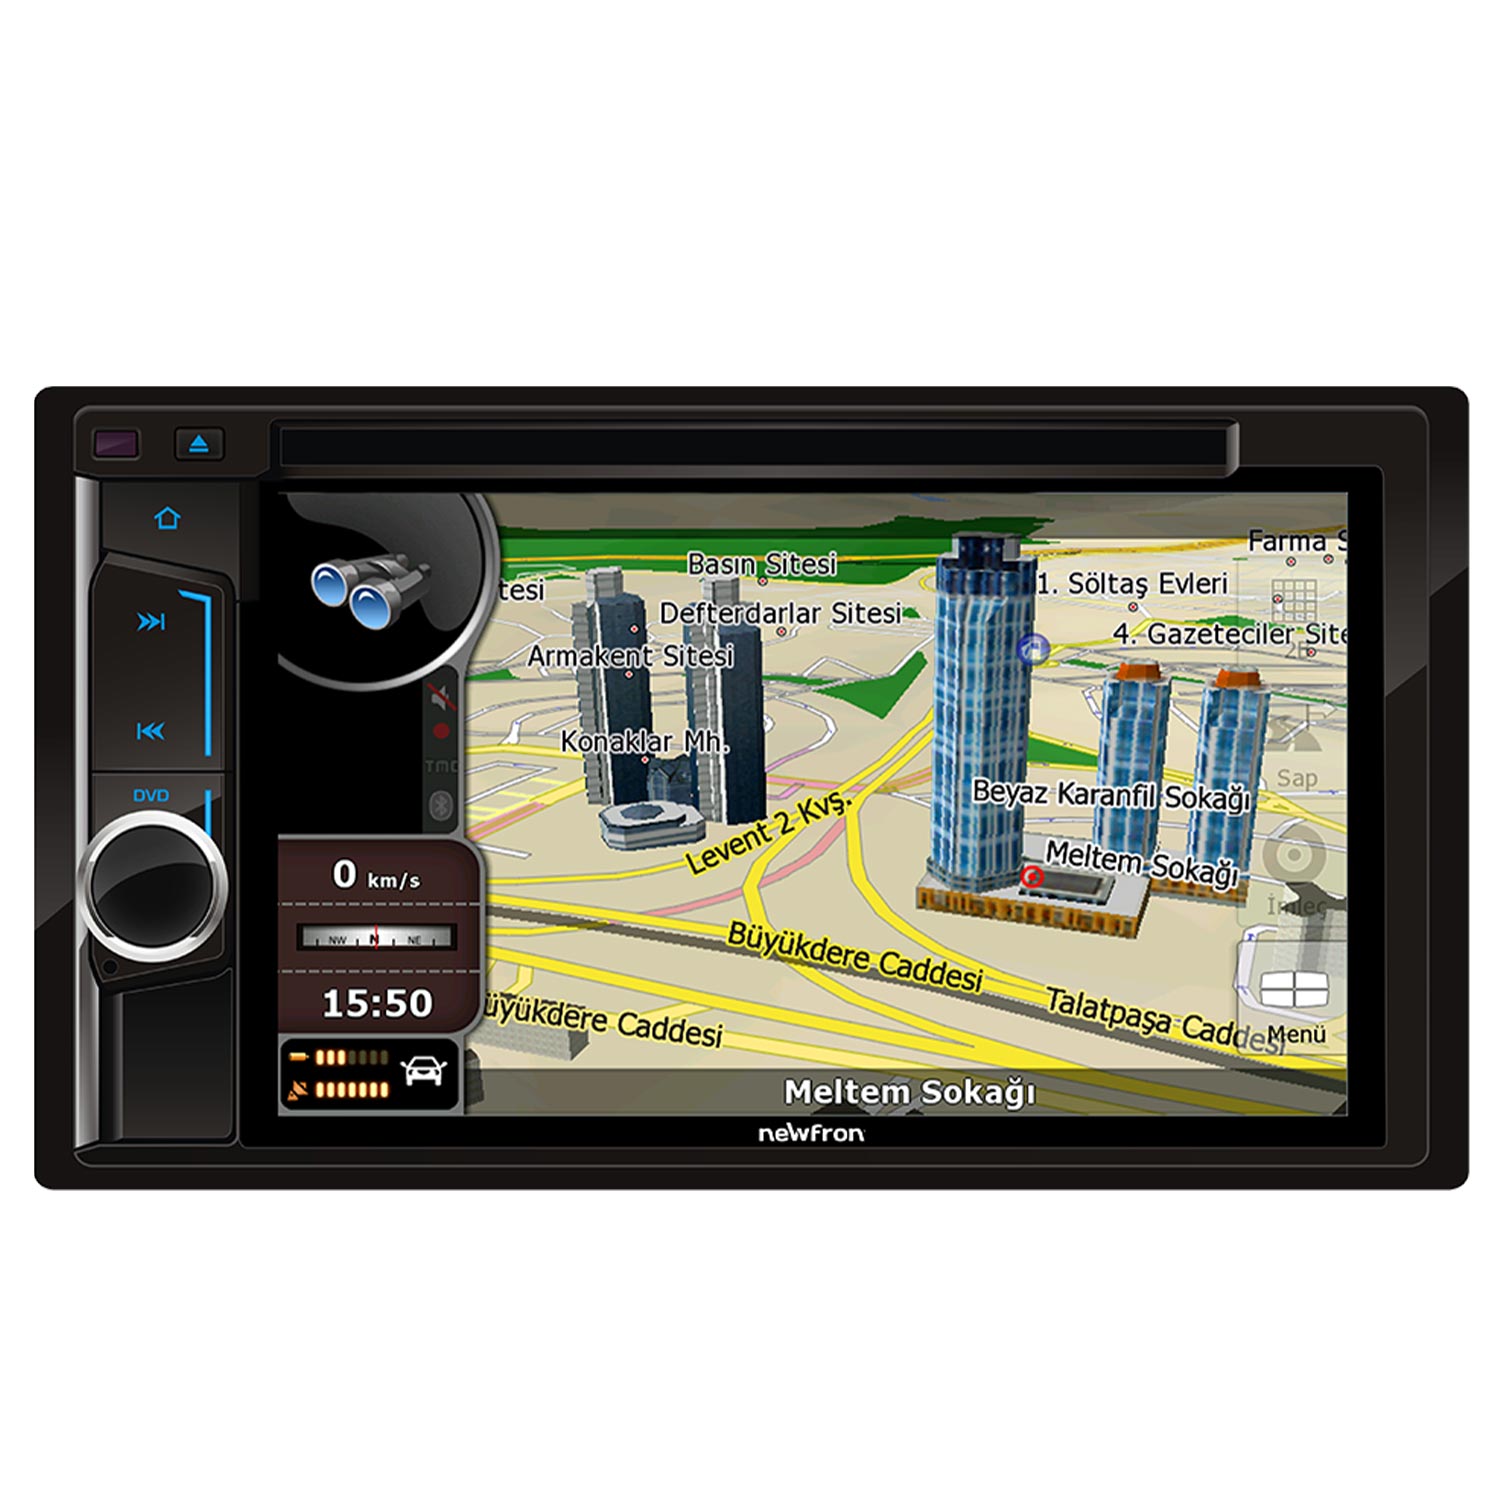 DOUBLE TEYP 6.2 4X50W GPS/DVD/BT/USB/SD/FM/AUX KAMERALI NEWFRON NF-ND626